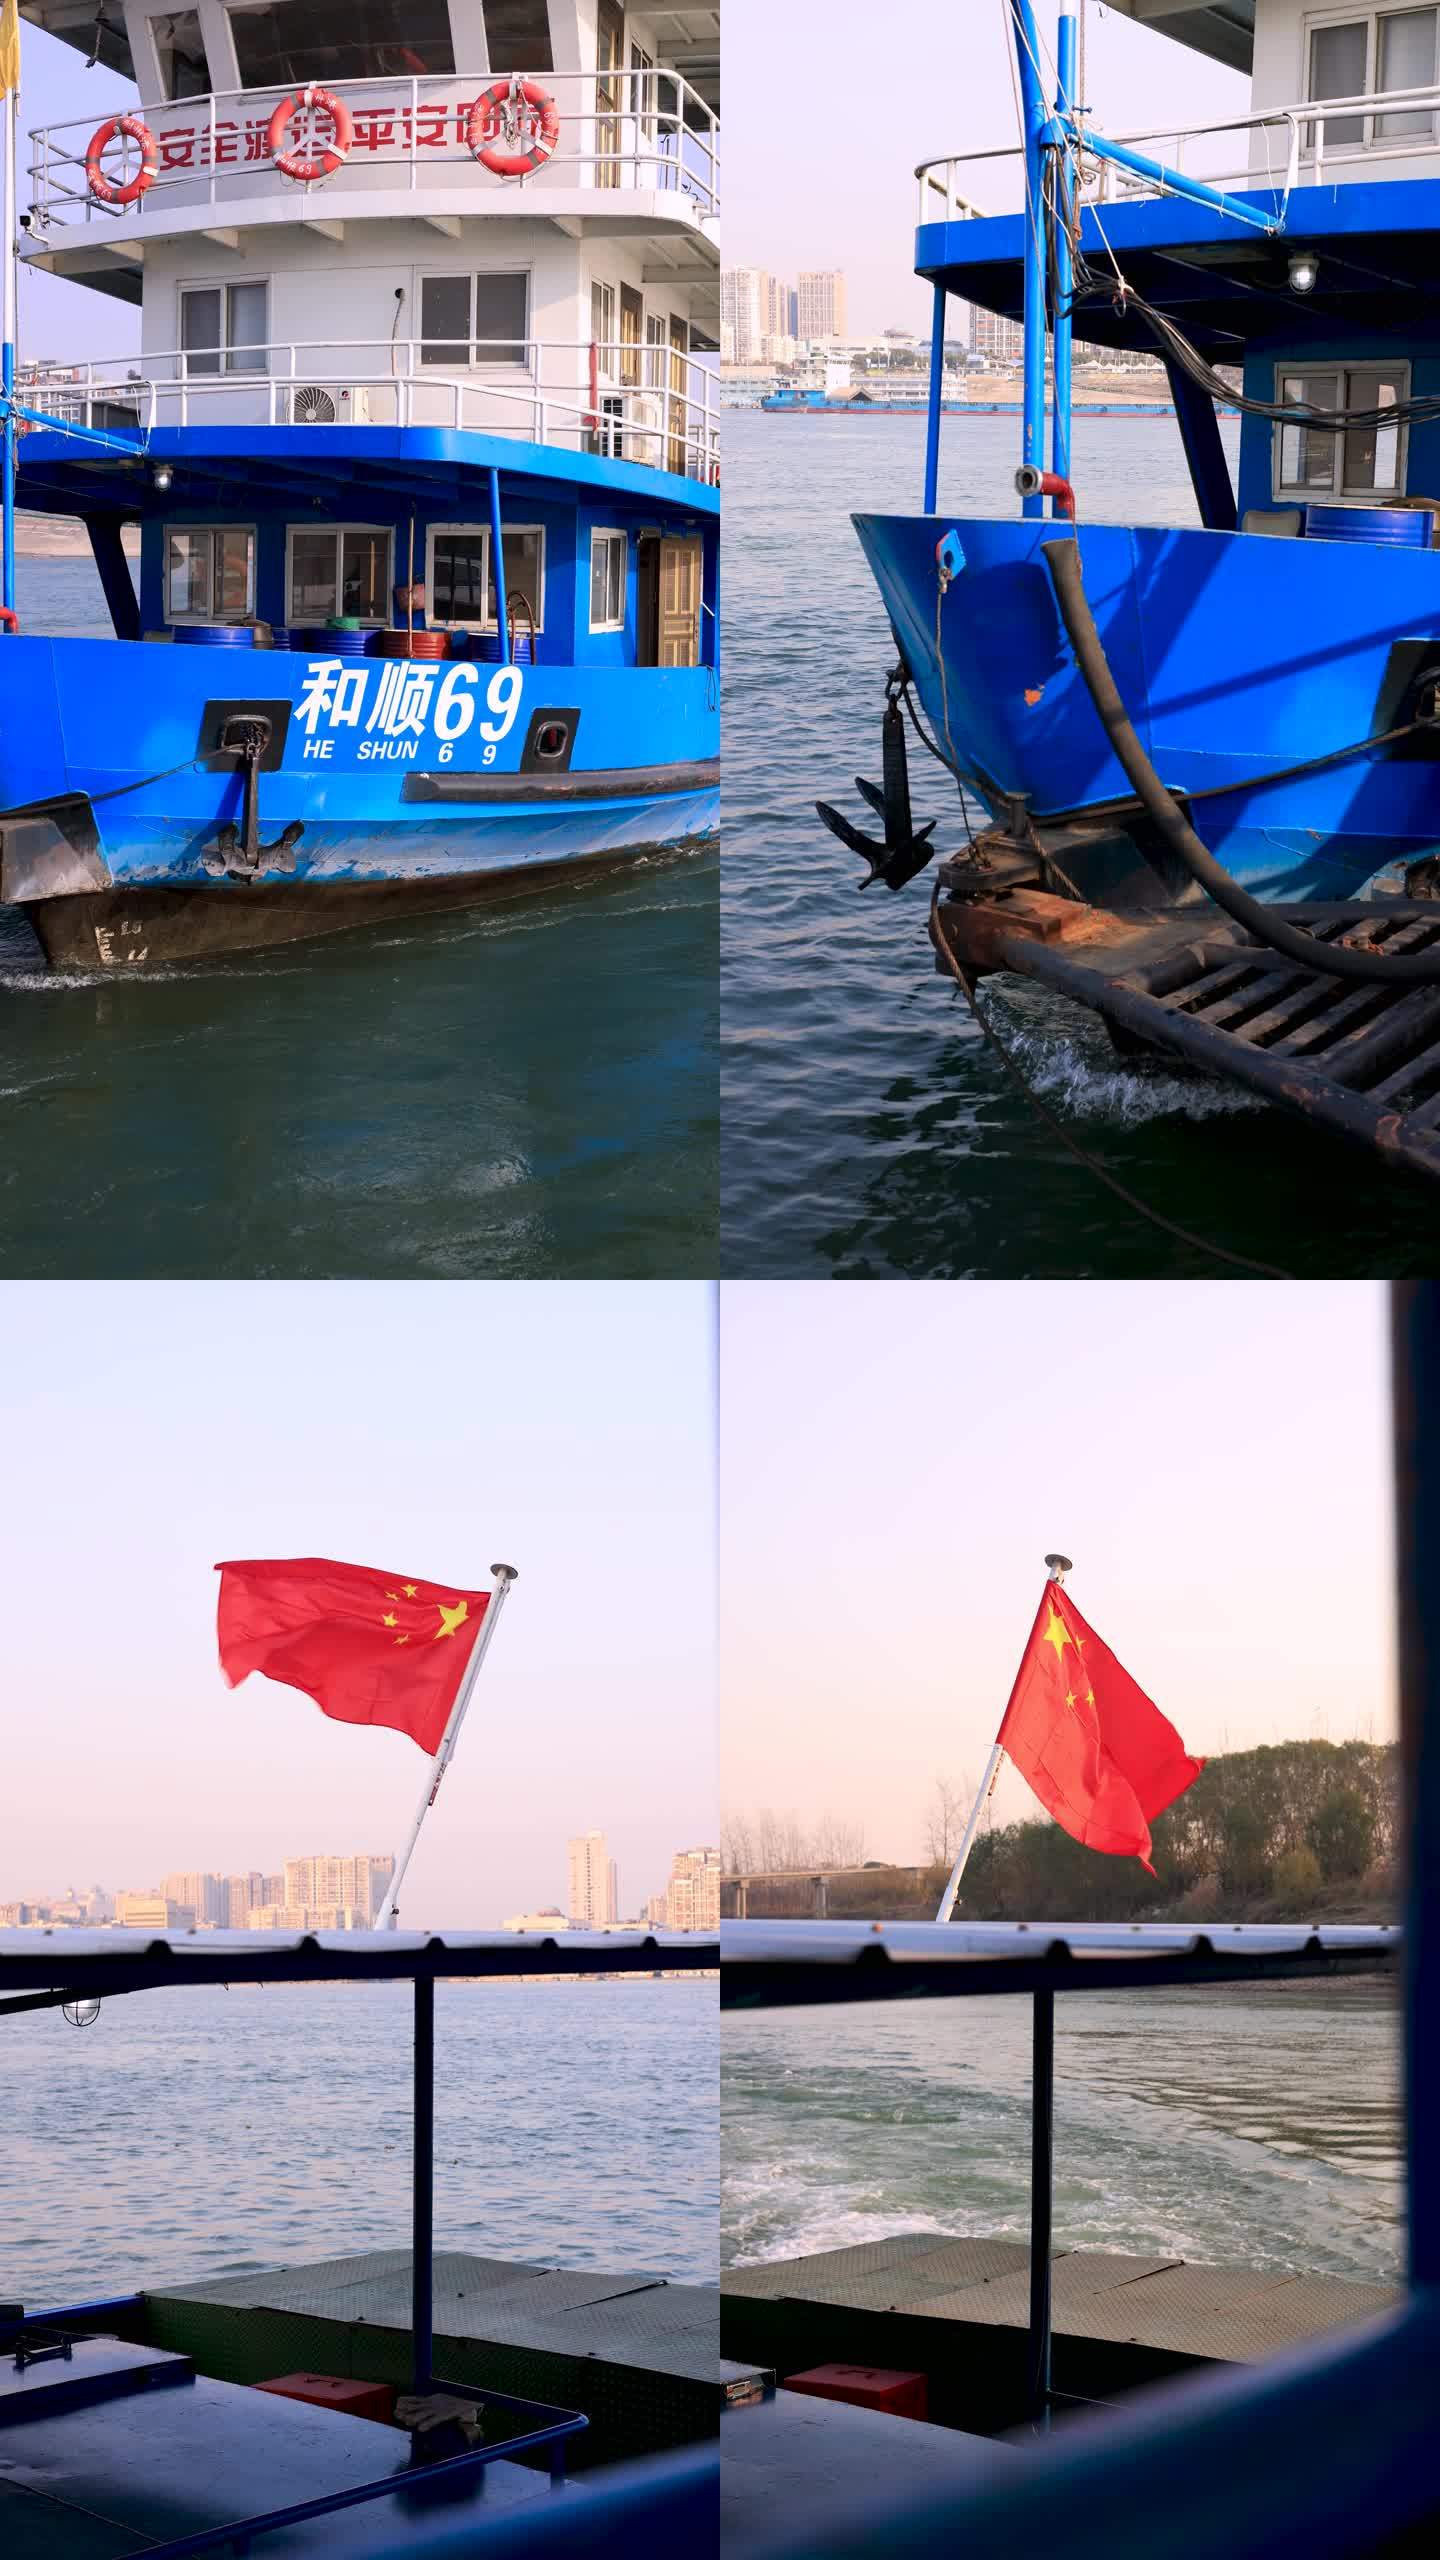 荆州轮渡码头 摆渡船过江 江面波光粼粼